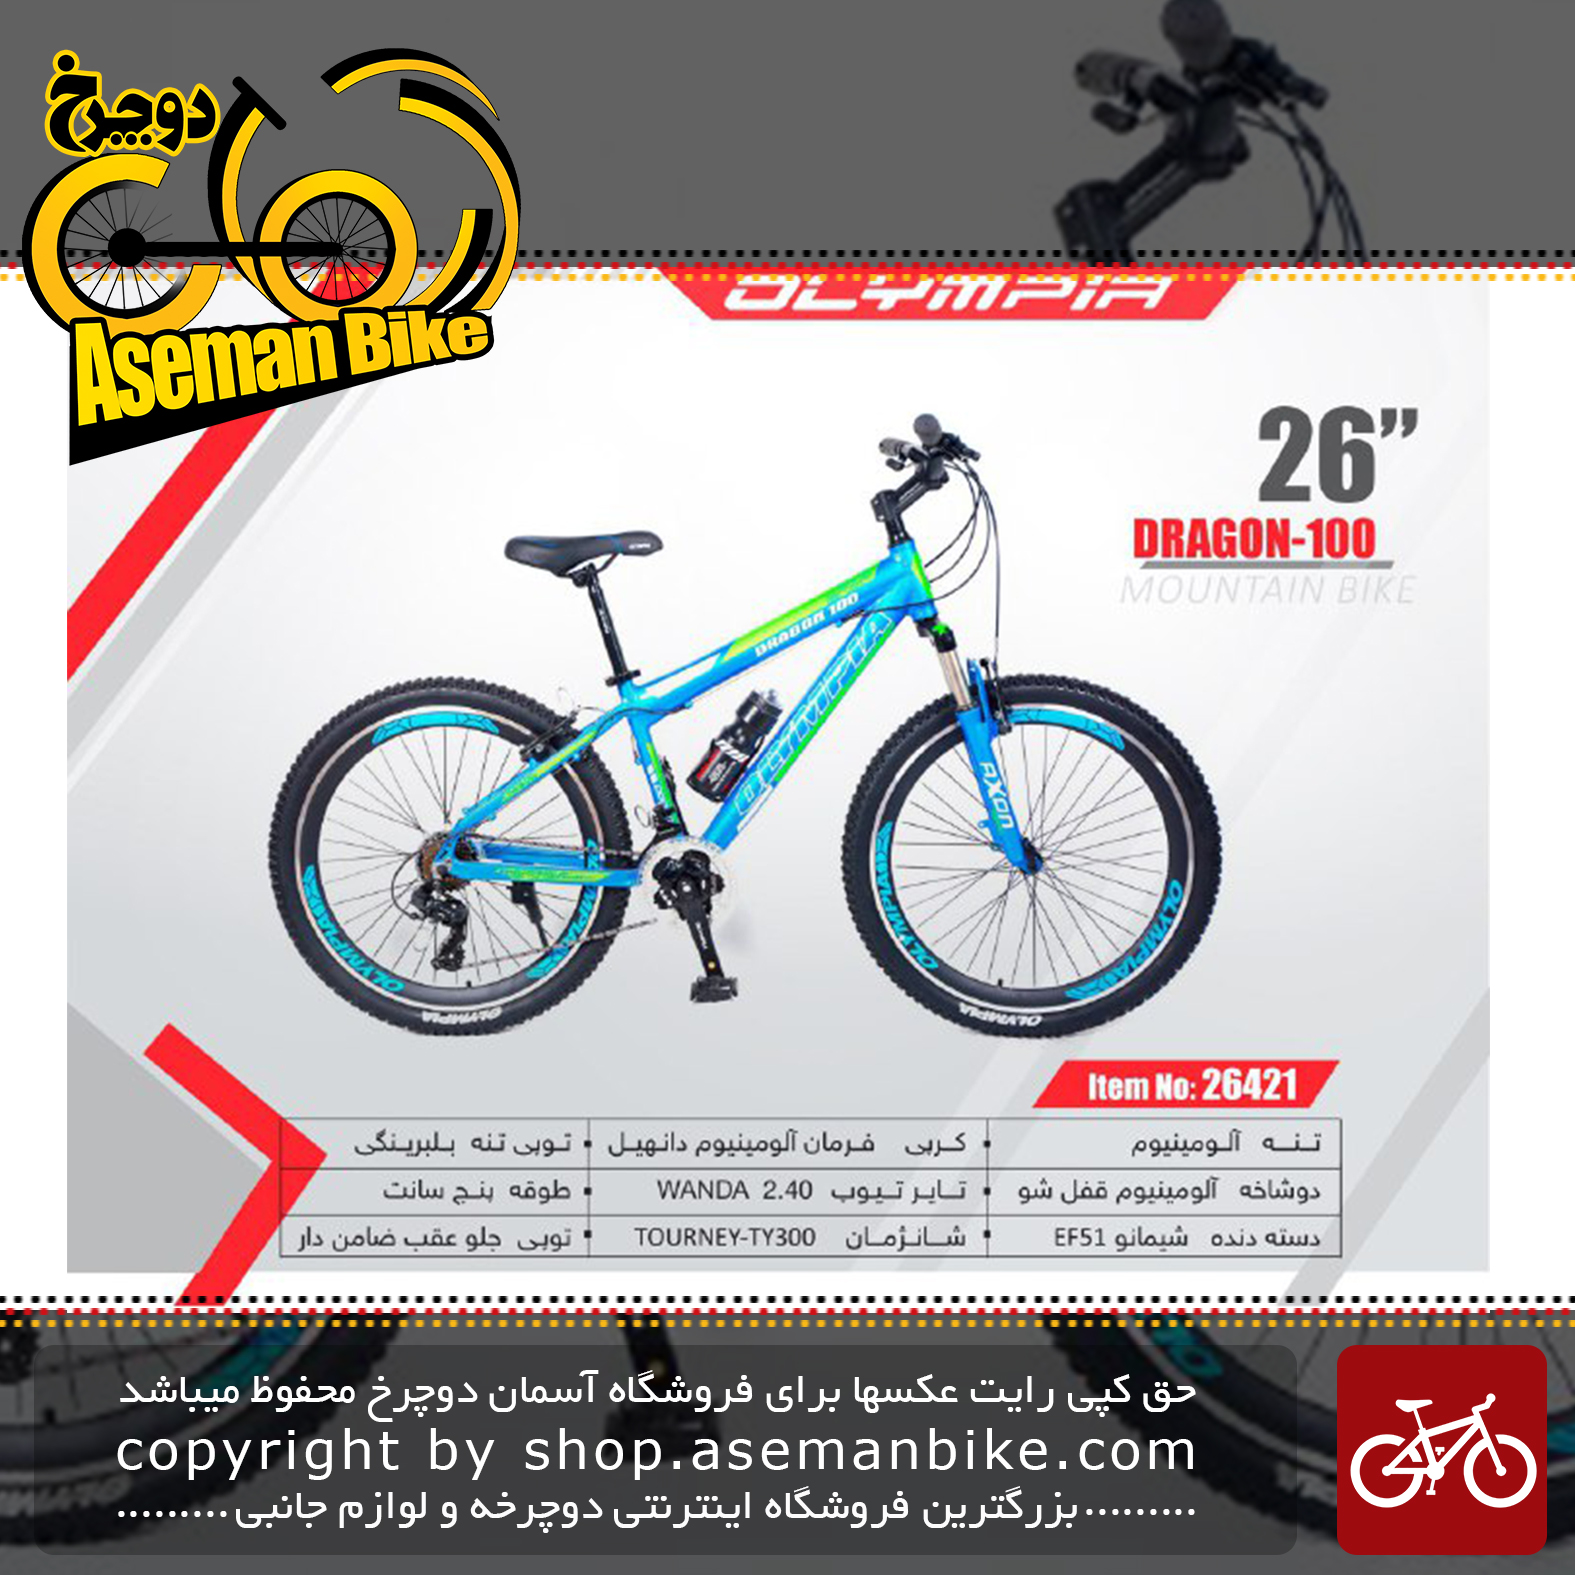 دوچرخه کوهستان المپیا سایز 26مدل دراگون 100 OLYMPIA SIZE 26 DRAGON 100